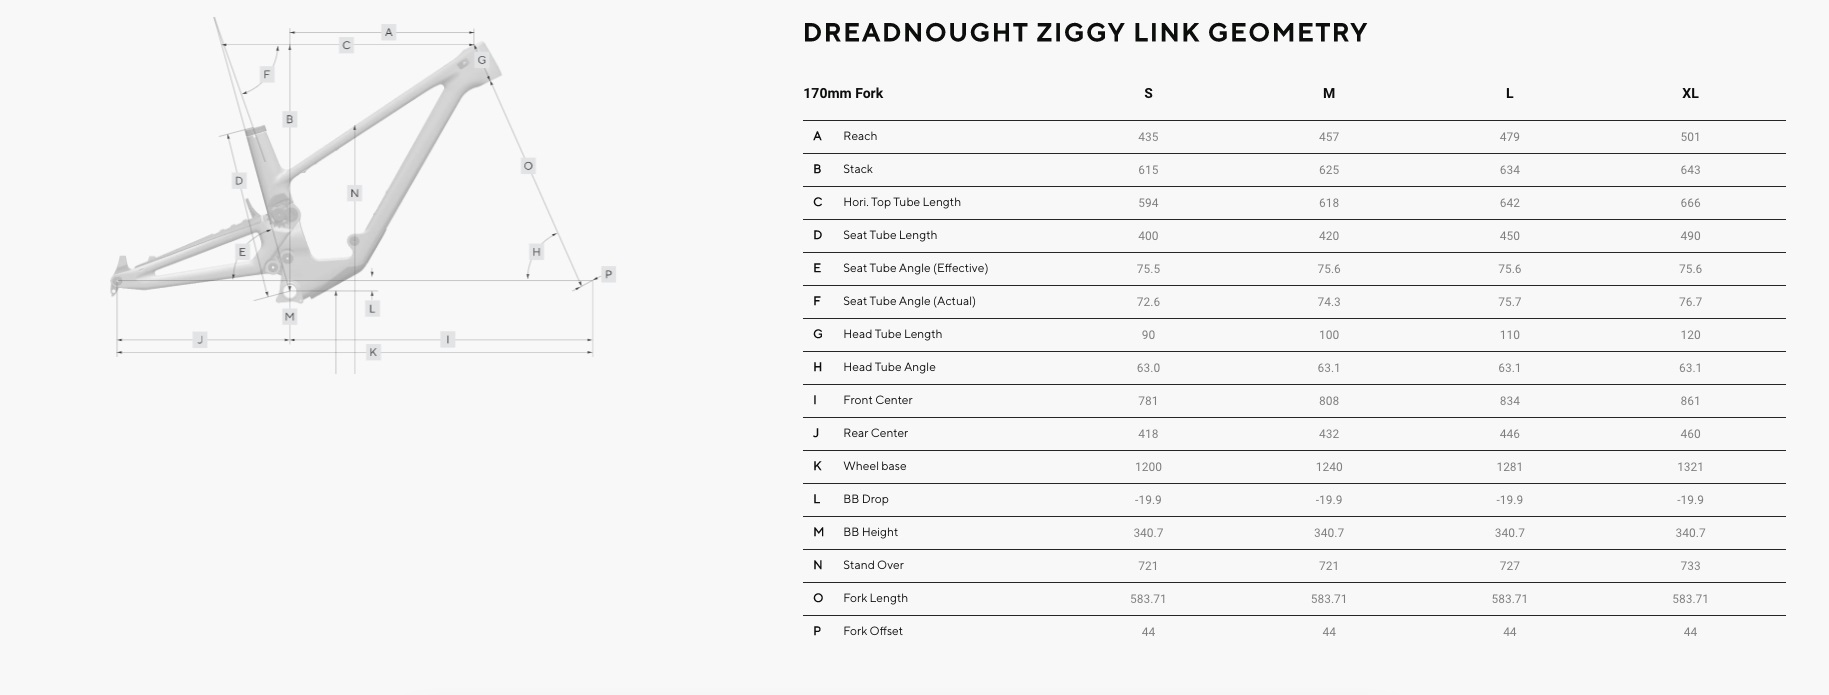 Forbidden Dreadnought Ziggy link geometry